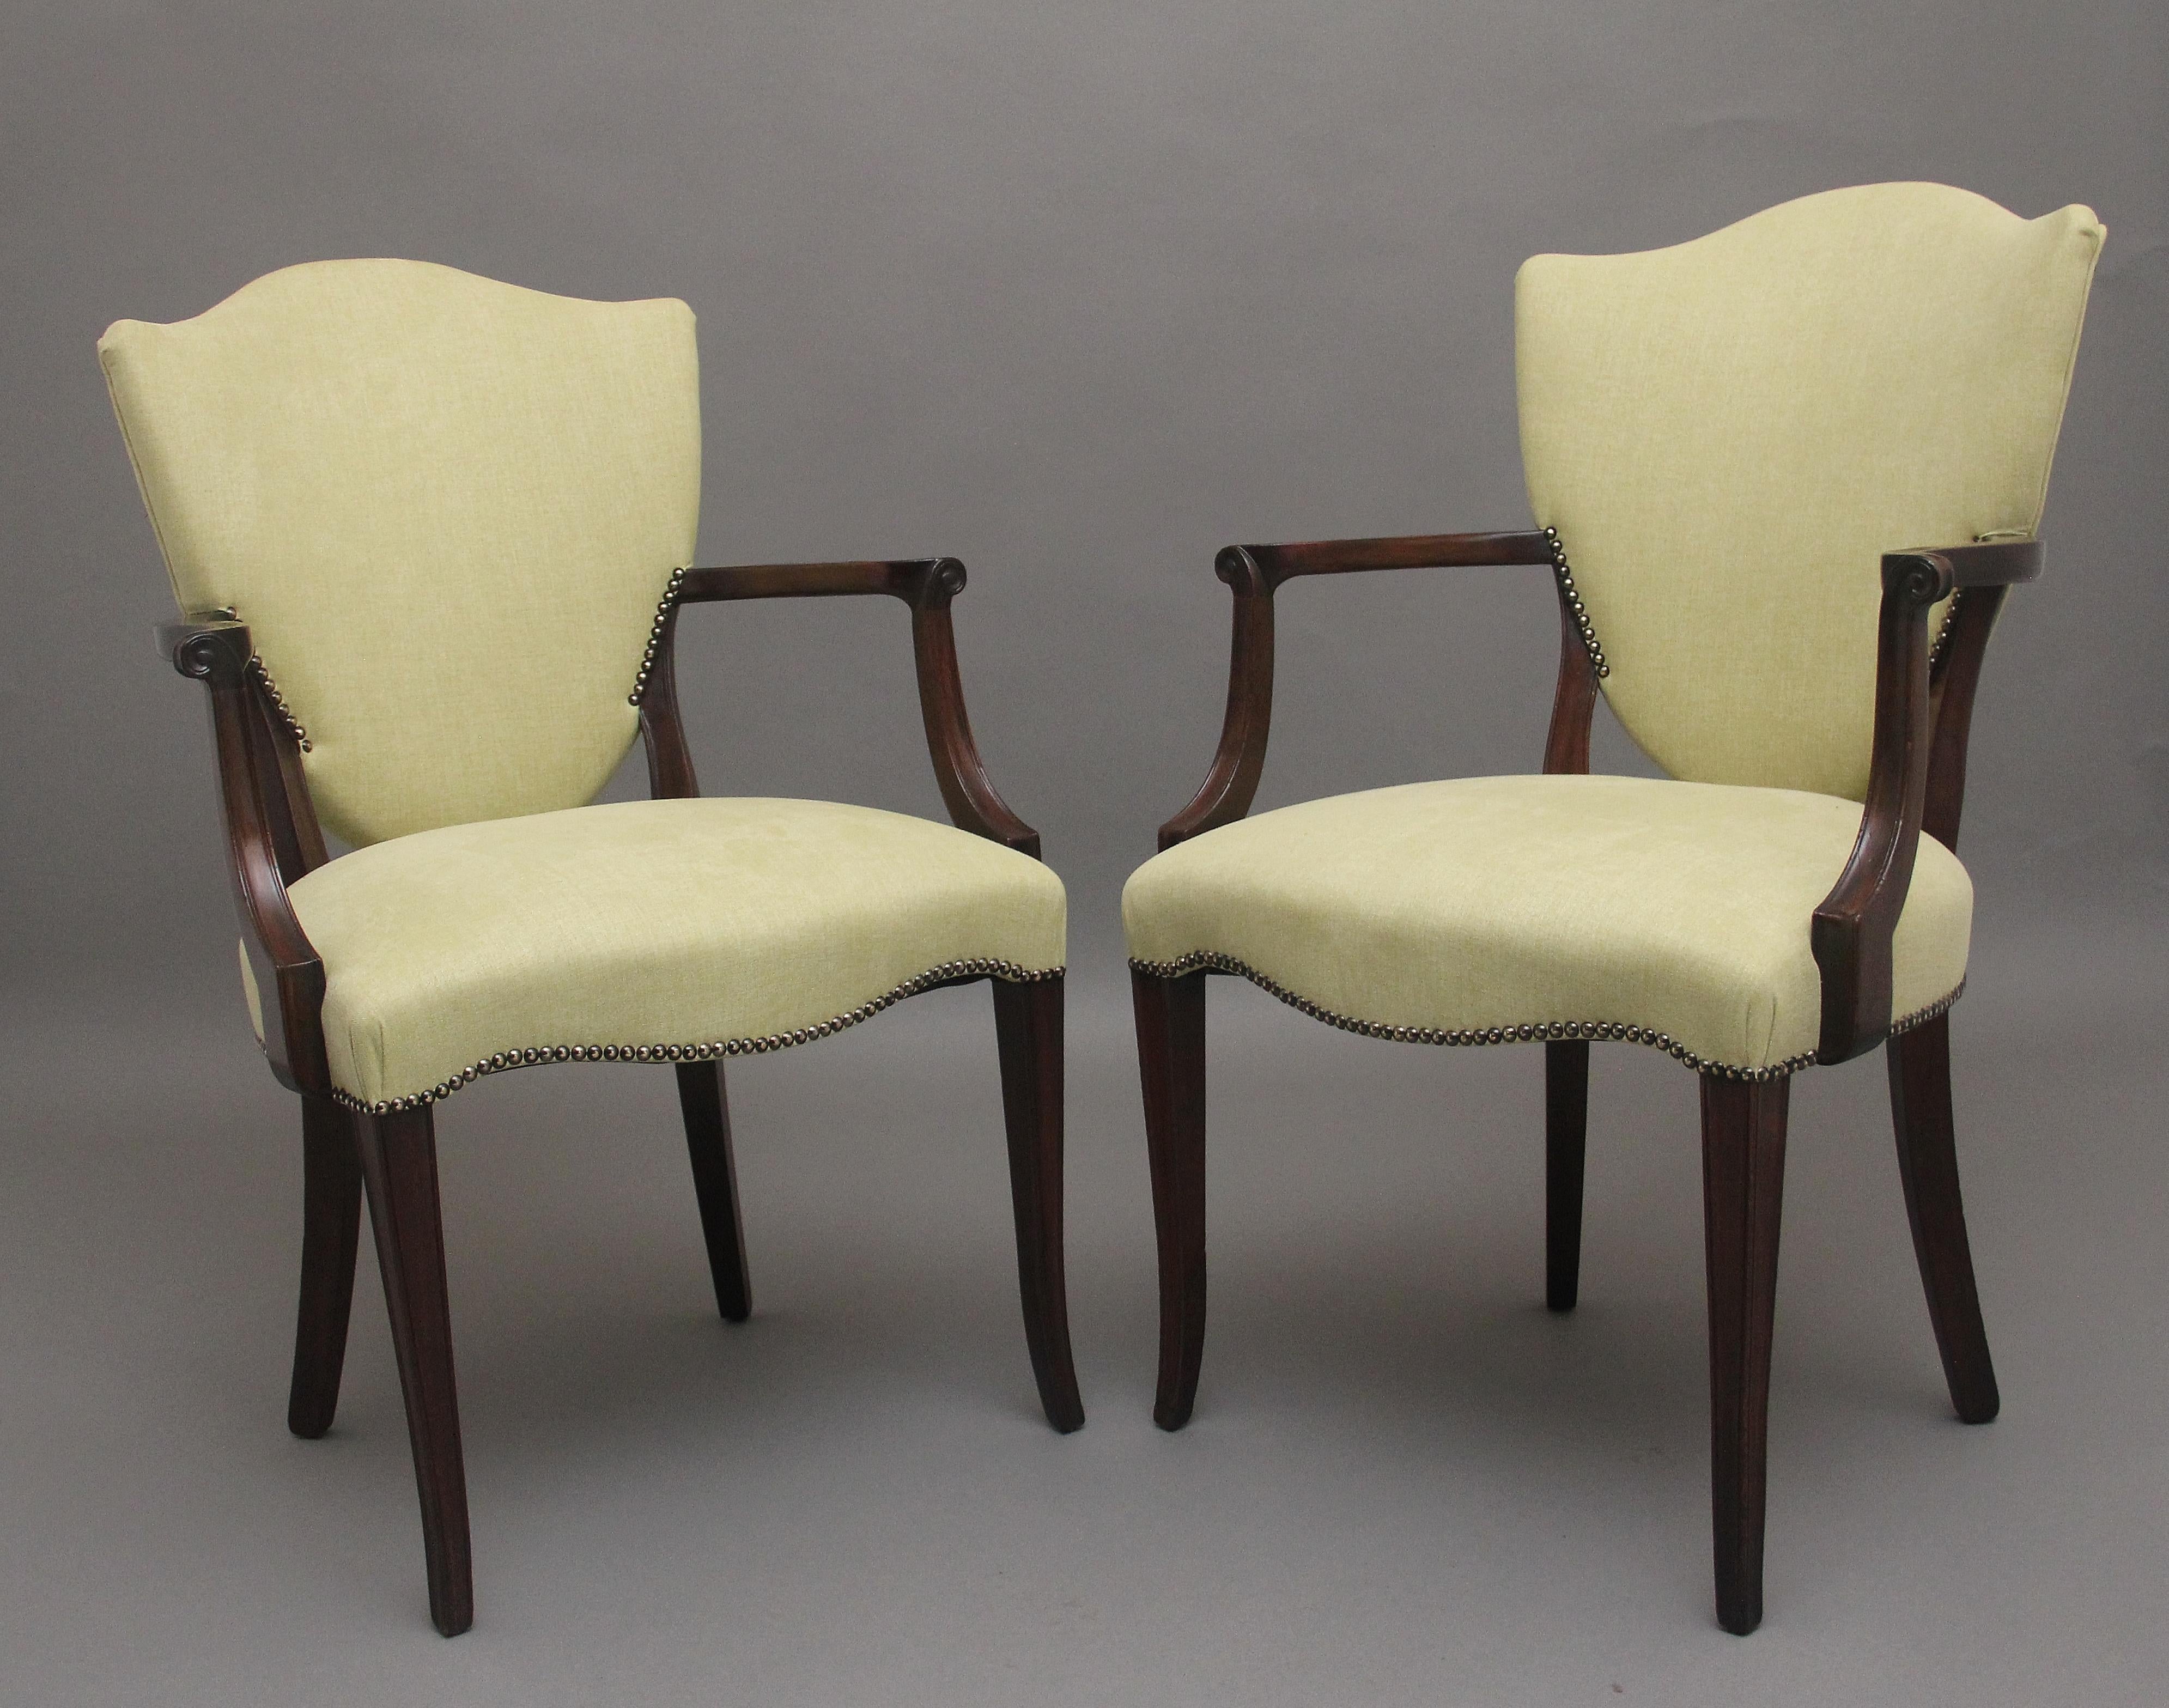 Paire de fauteuils en acajou du début du 20e siècle de style Sheraton, récemment retapissés dans un tissu vert clair, avec un dossier rembourré en forme de bouclier, des supports d'accoudoirs de forme merveilleuse, une assise rembourrée avec une